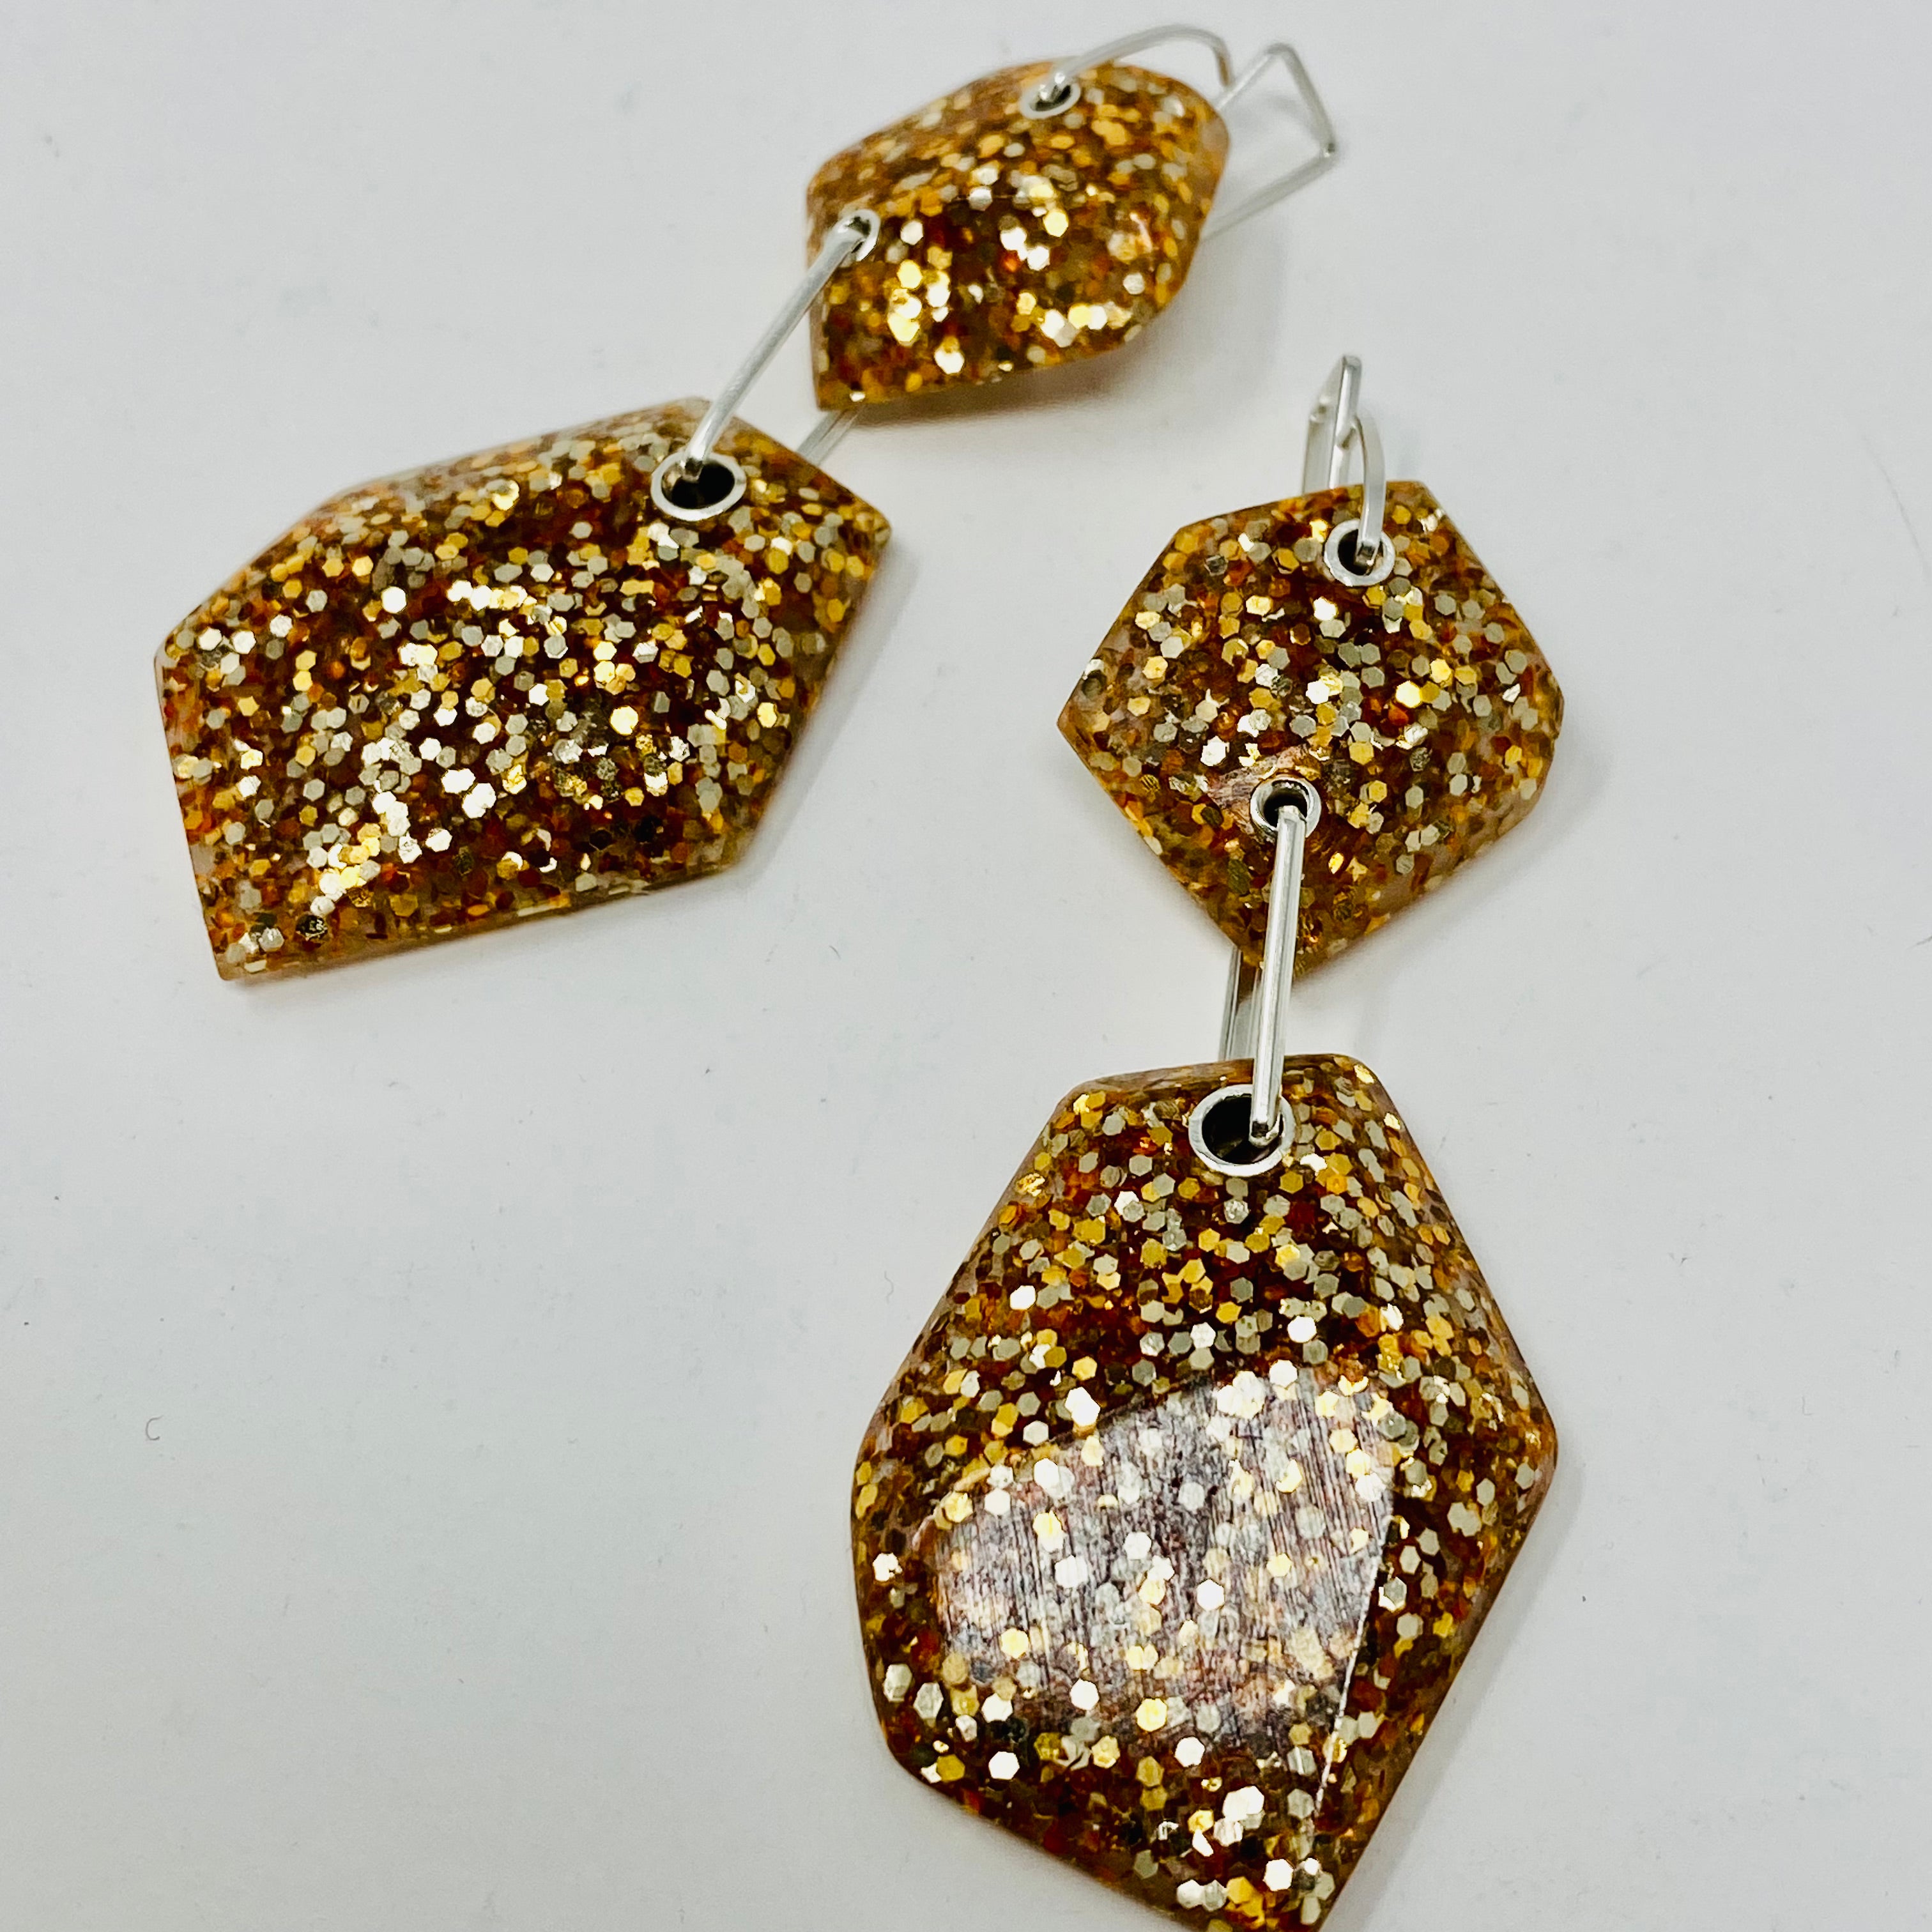 Double Rock earrings, Ultra glitter